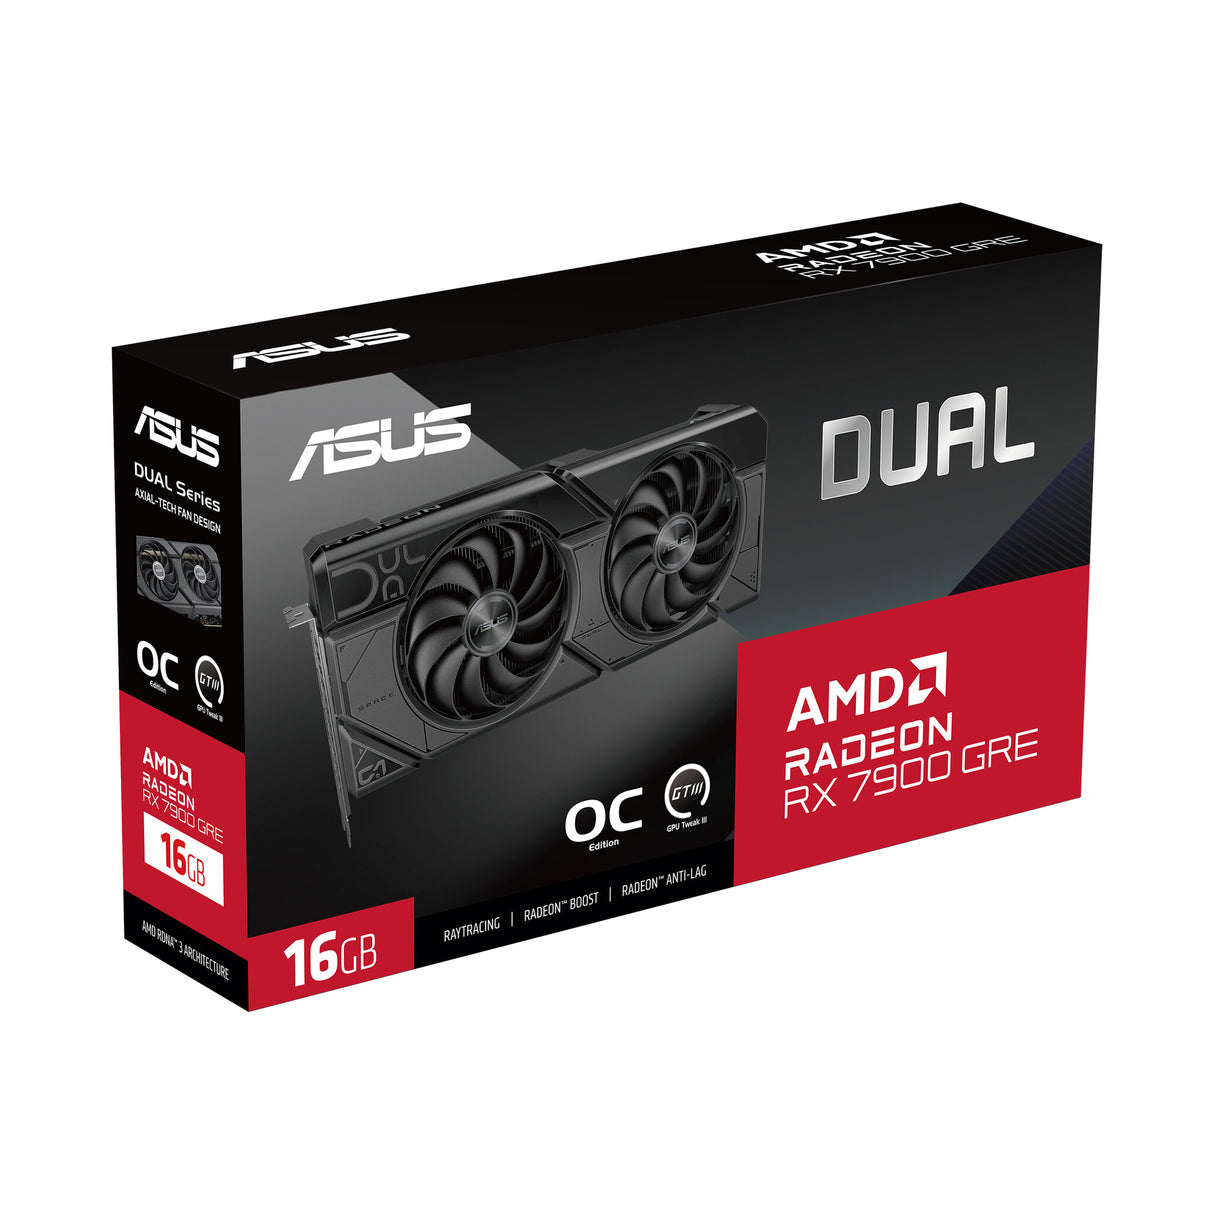 ASUS Dual -RX7900GRE-O16G AMD Radeon RX 7900 GRE 16 GB GDDR6